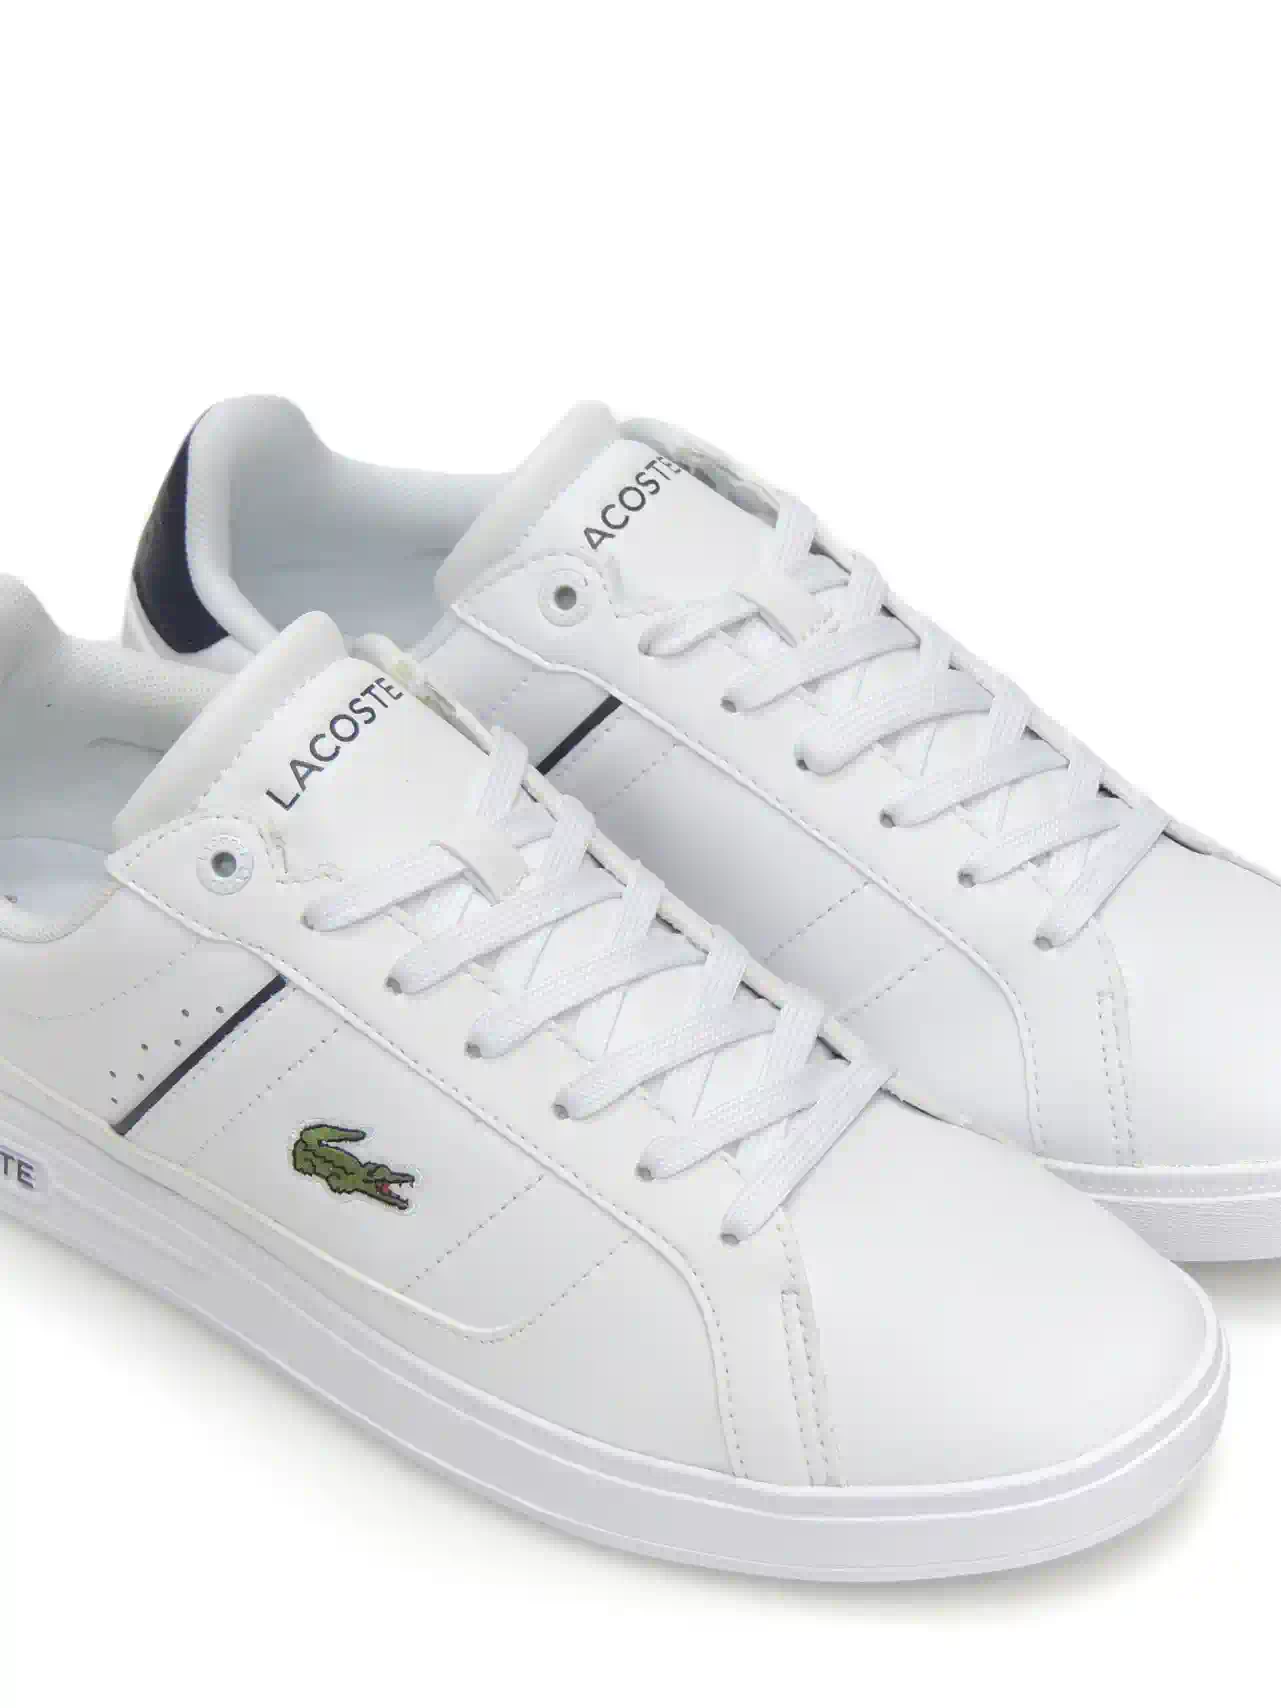 sneakers--lacoste-europa-piel-blanco